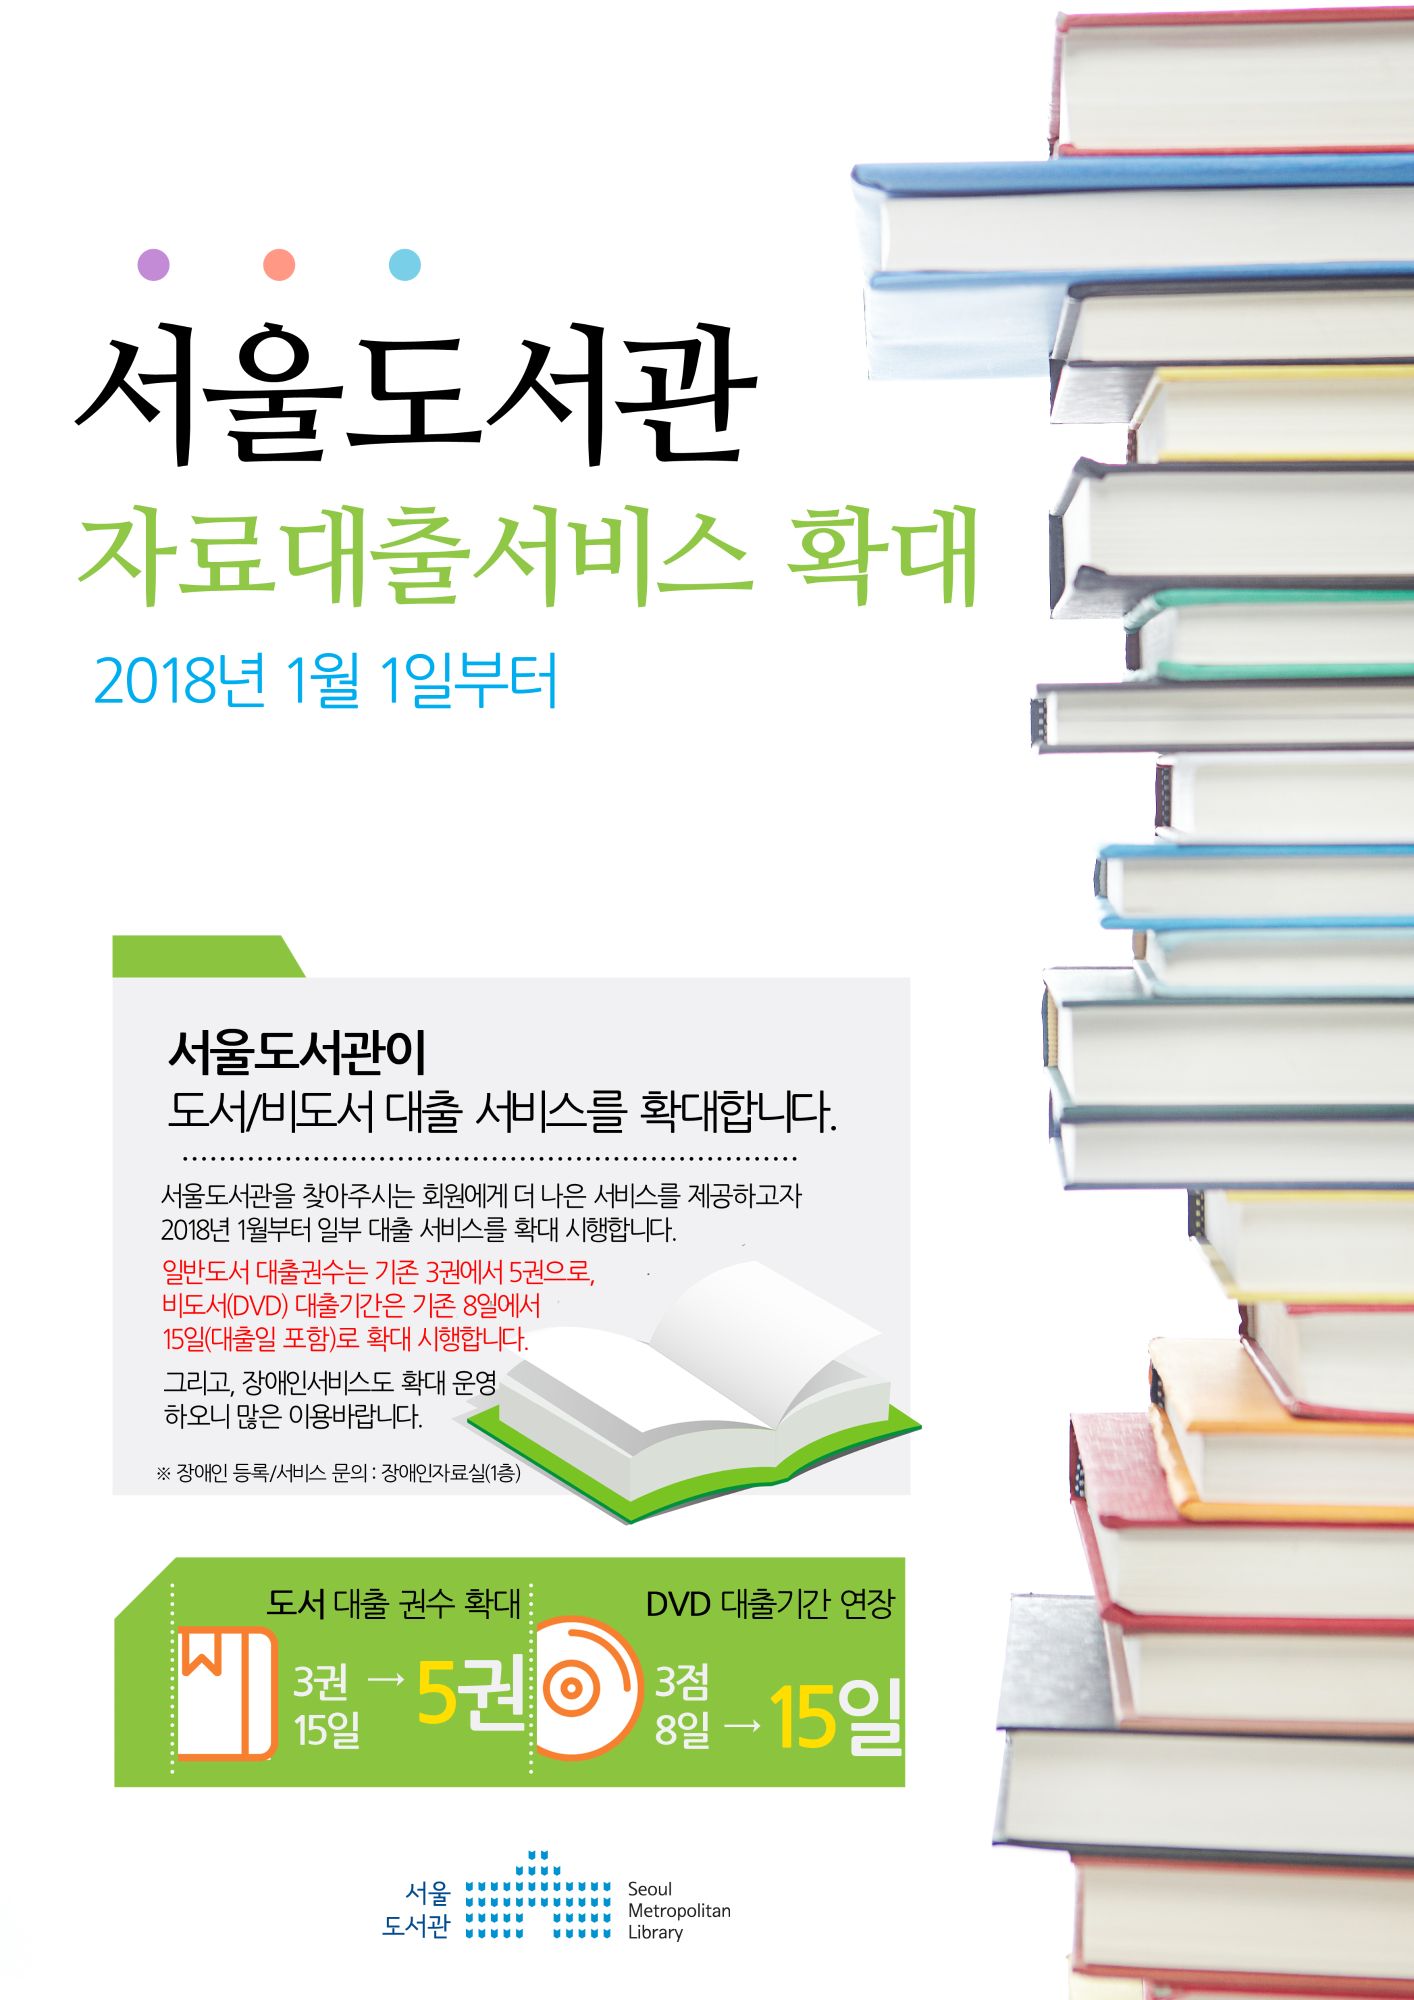 서울도서관 자료대출서비스 확대 안내 포스터